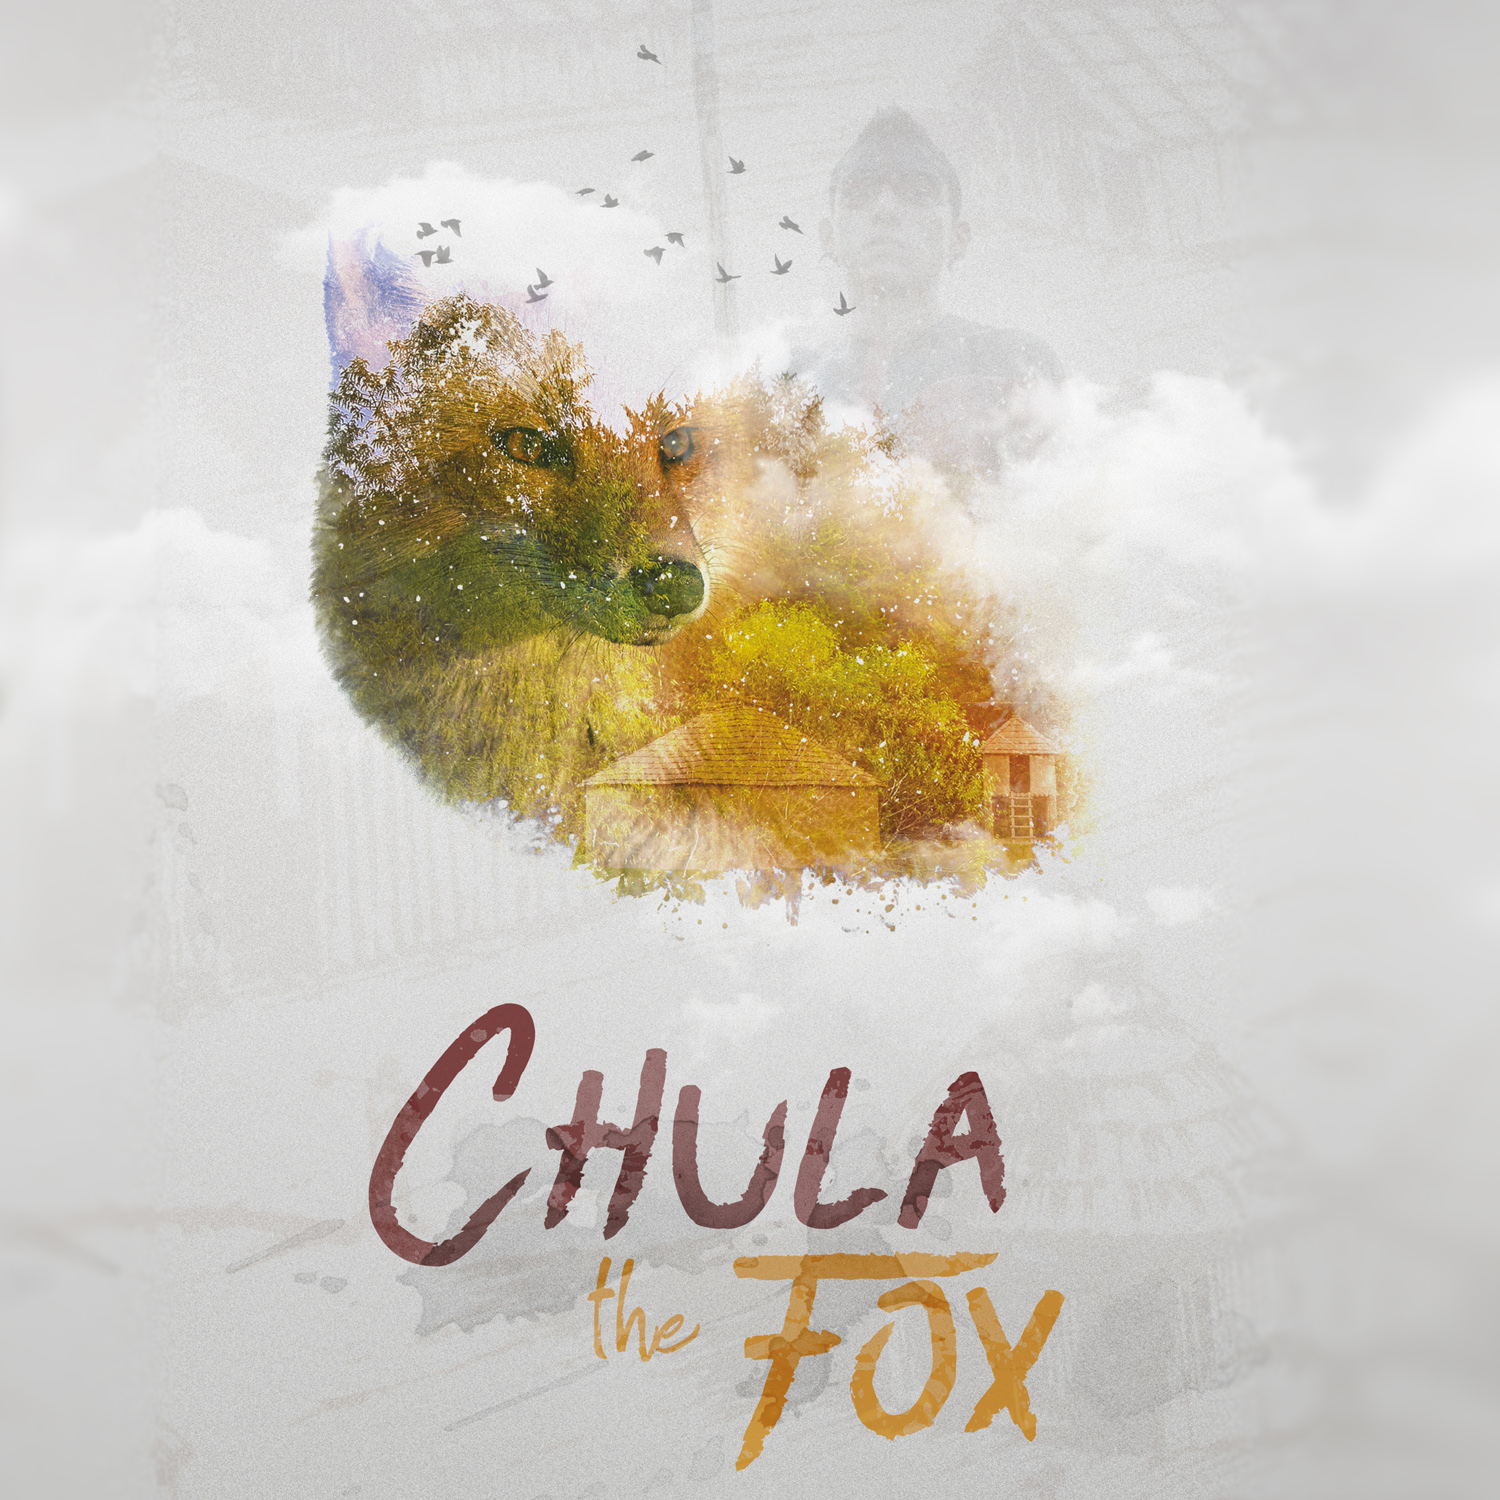 Chula The Fox